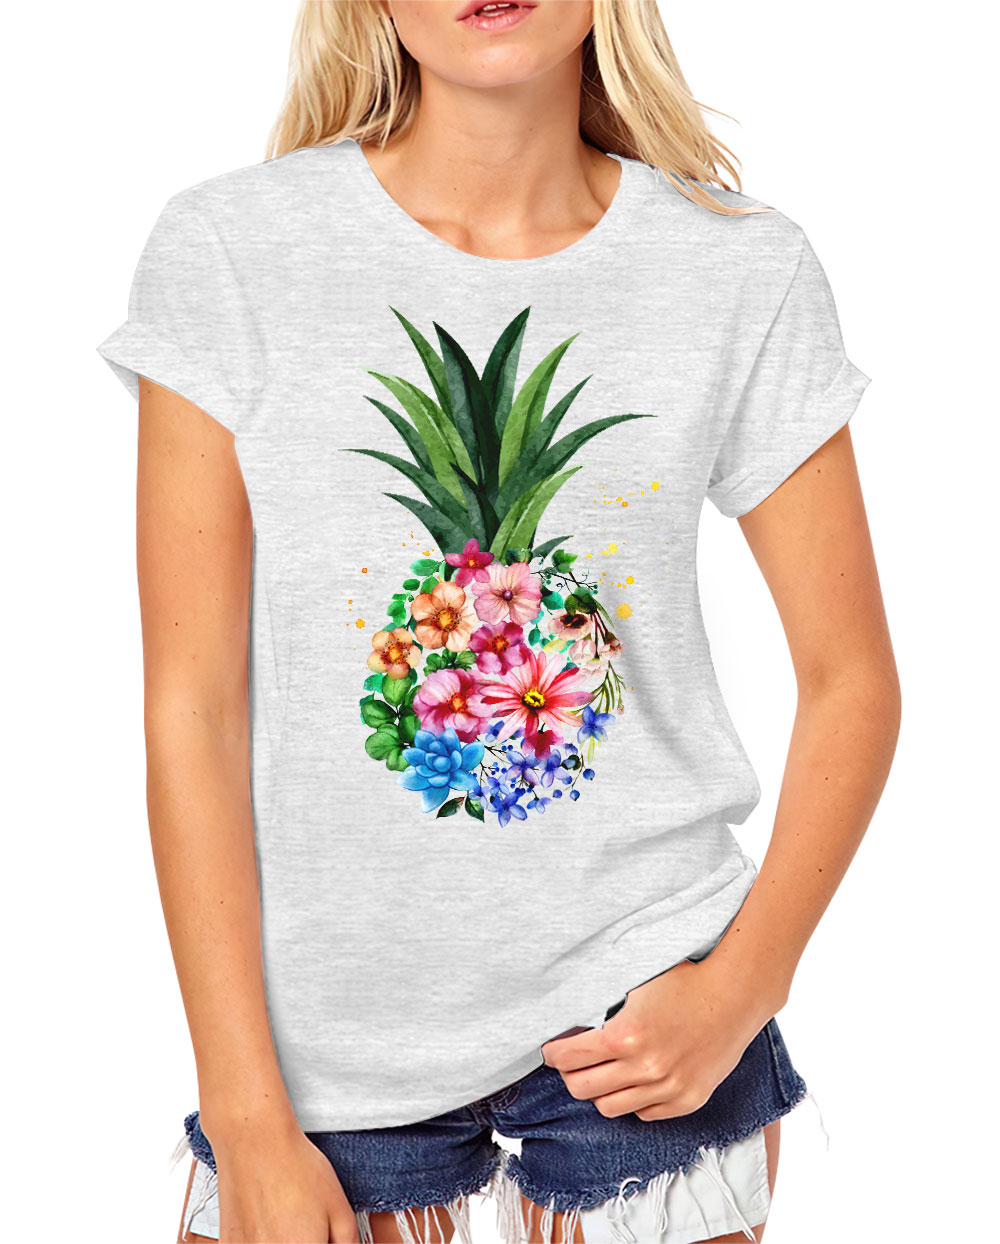 Hawaii Hawaii Shirt Aloha t shirt Hawaii tshirt I Love Hawaii Pineapple Heart Shirt Aloha Hawaii shirt woman Aloha Shirt